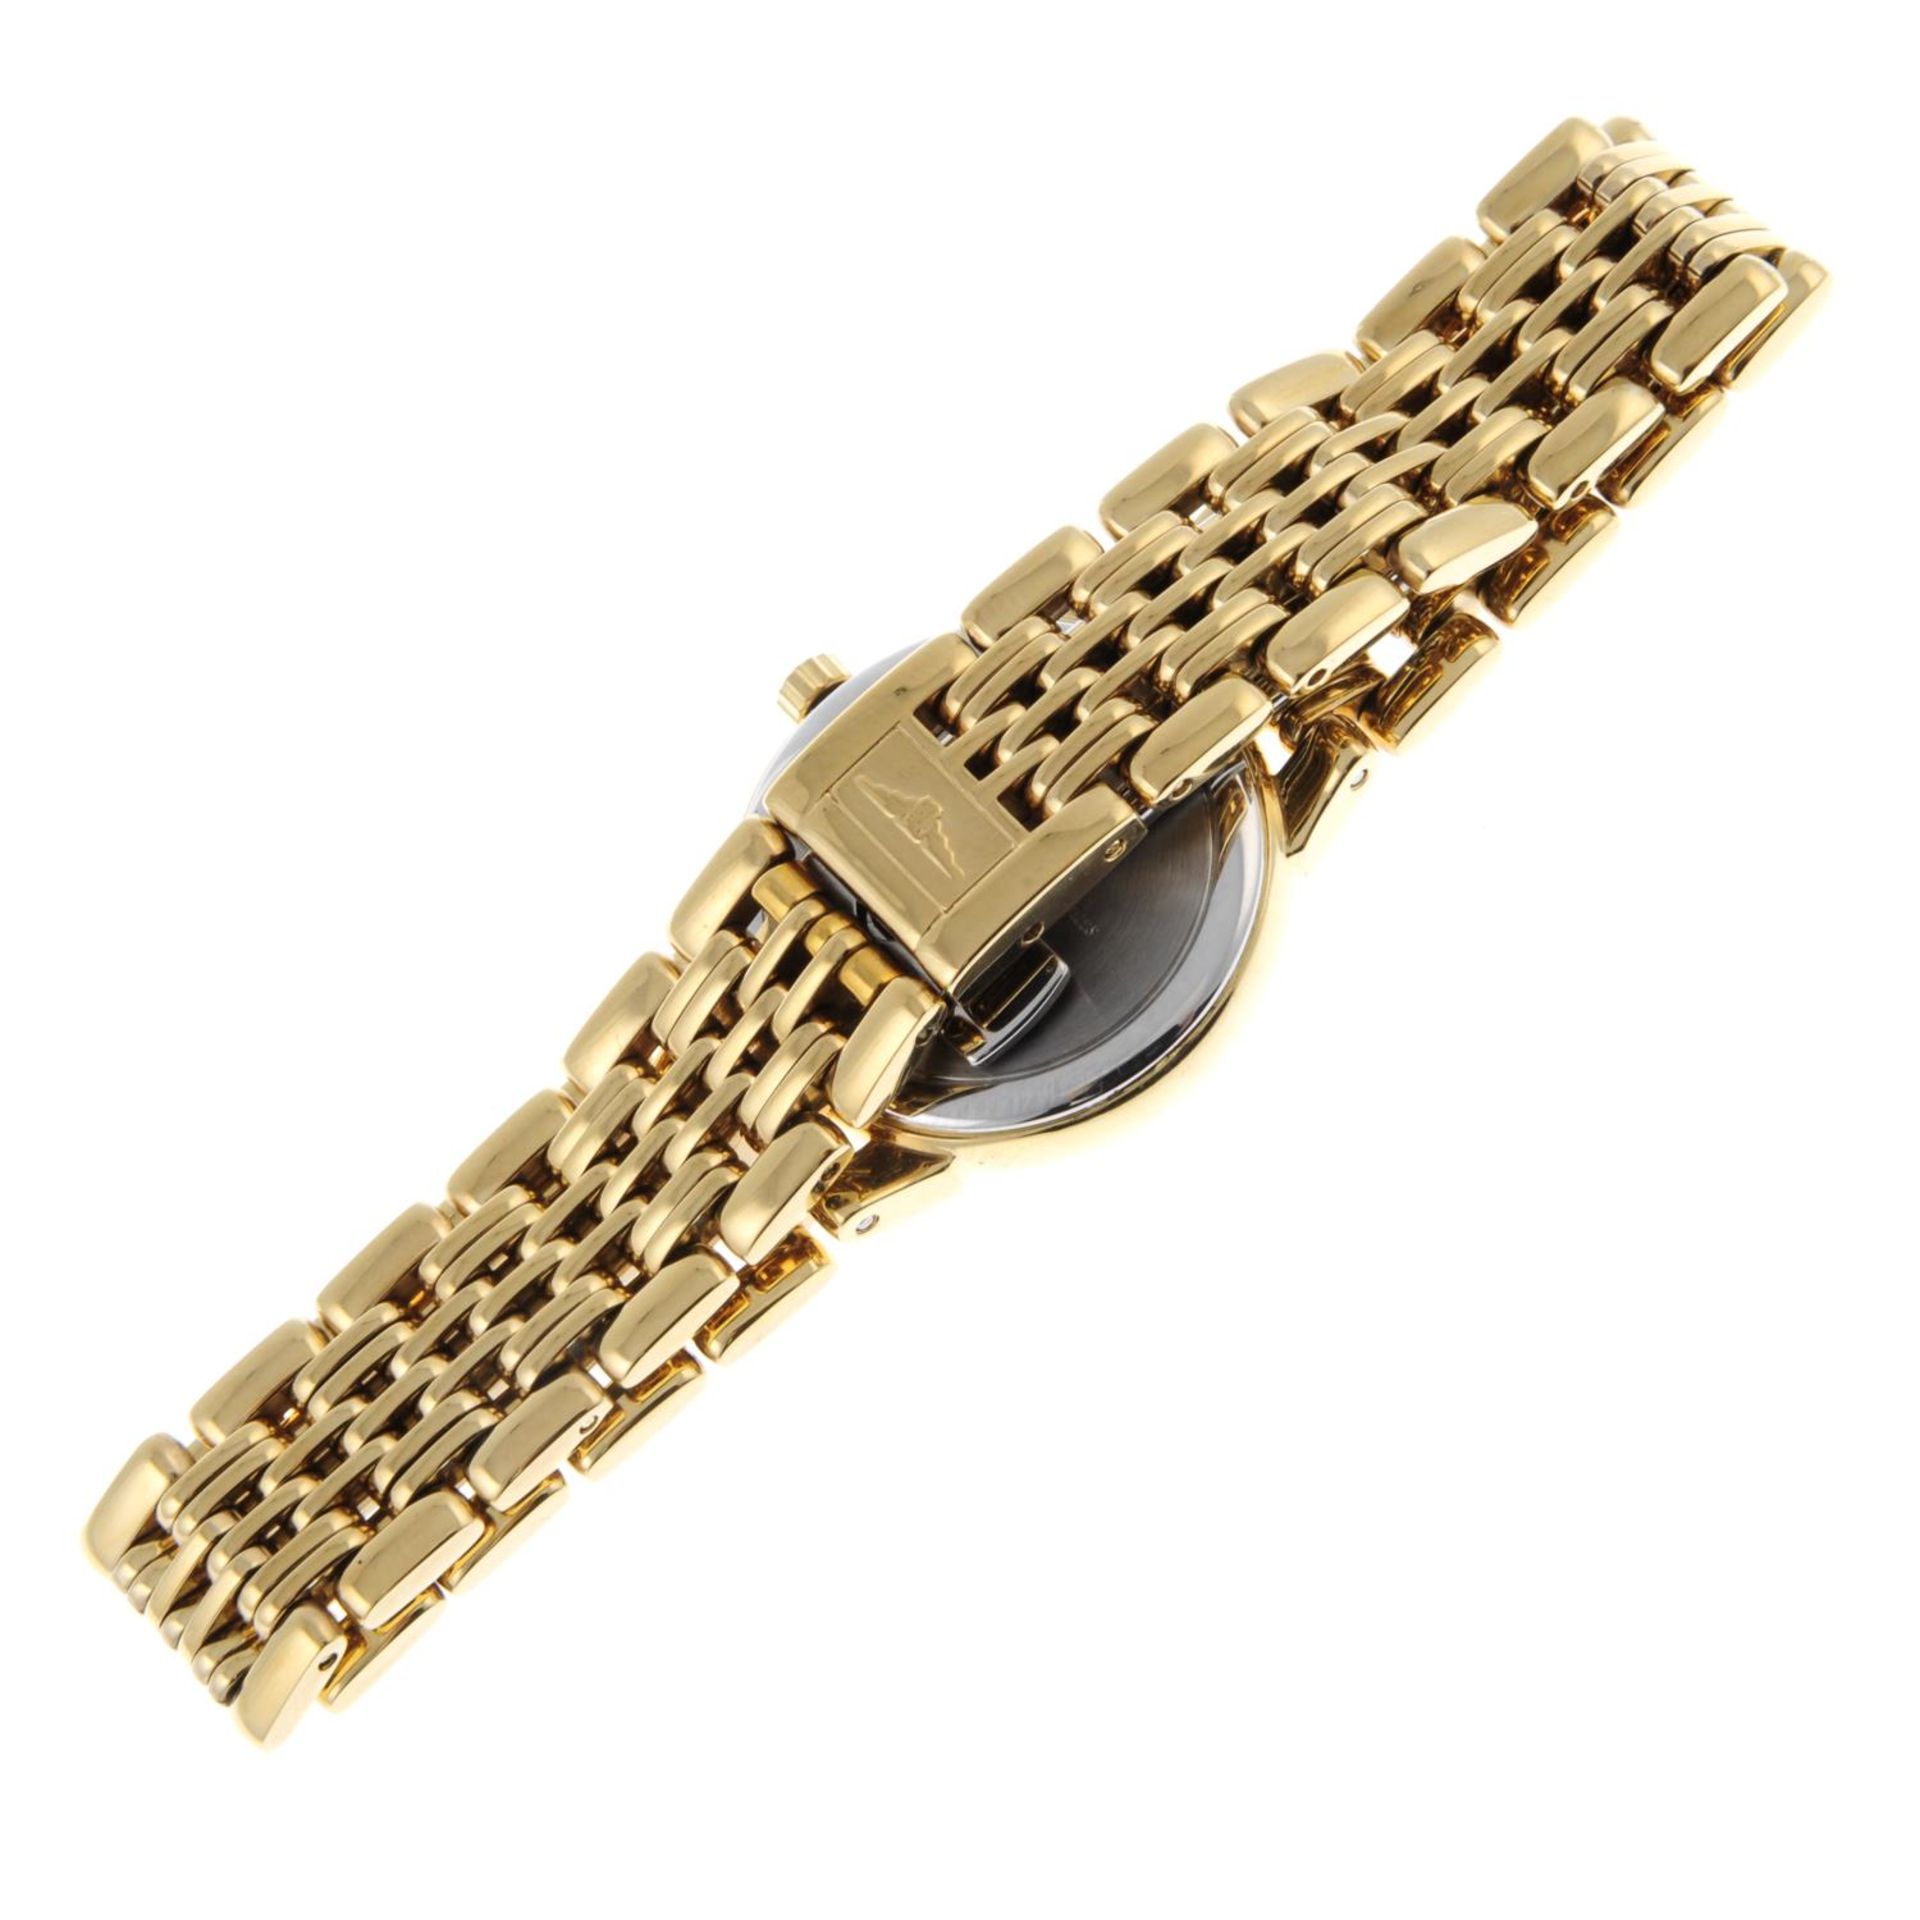 LONGINES - a lady's Les Grandes Classiques bracelet watch. - Image 3 of 5